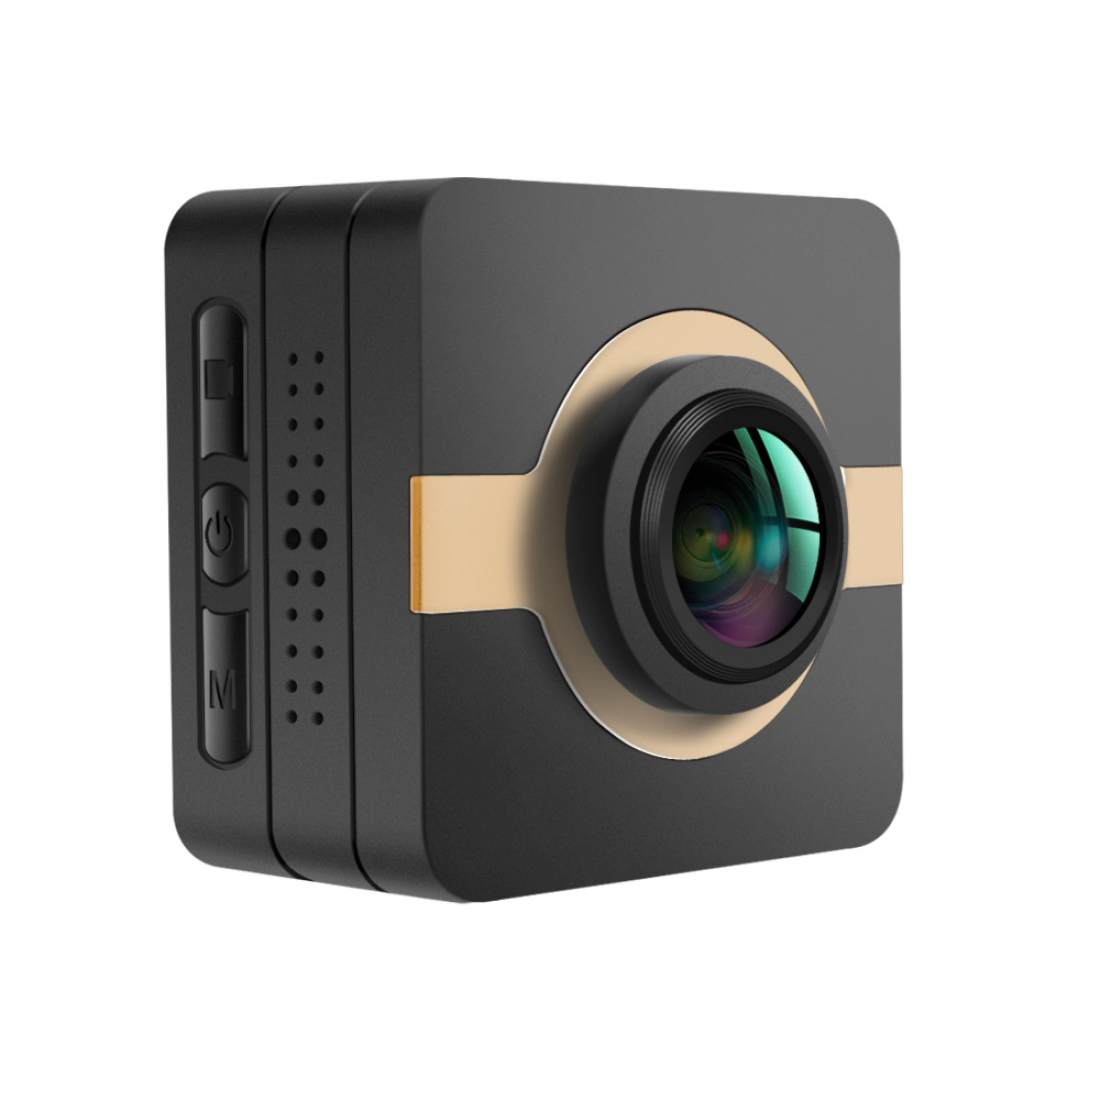 Matecam X1 Mini Action Camera Ταμπλό αυτοκινήτου Κάμερα Κάμερα εγγραφής κάμερας 4K-HI Ultra HD Αδιάβροχη βιντεοκάμερα DV 16MP ευρυγώνια 160 μοιρών WIFI/G-Αισθητήρας/Γυροσκοπική σταθεροποίηση/Ανίχνευση κίνησης/Τηλεχειριστήριο Mini DVR Κλειδιά αυτοκινήτου Micro RC κάμερα κράνος ποδηλάτου Camwn